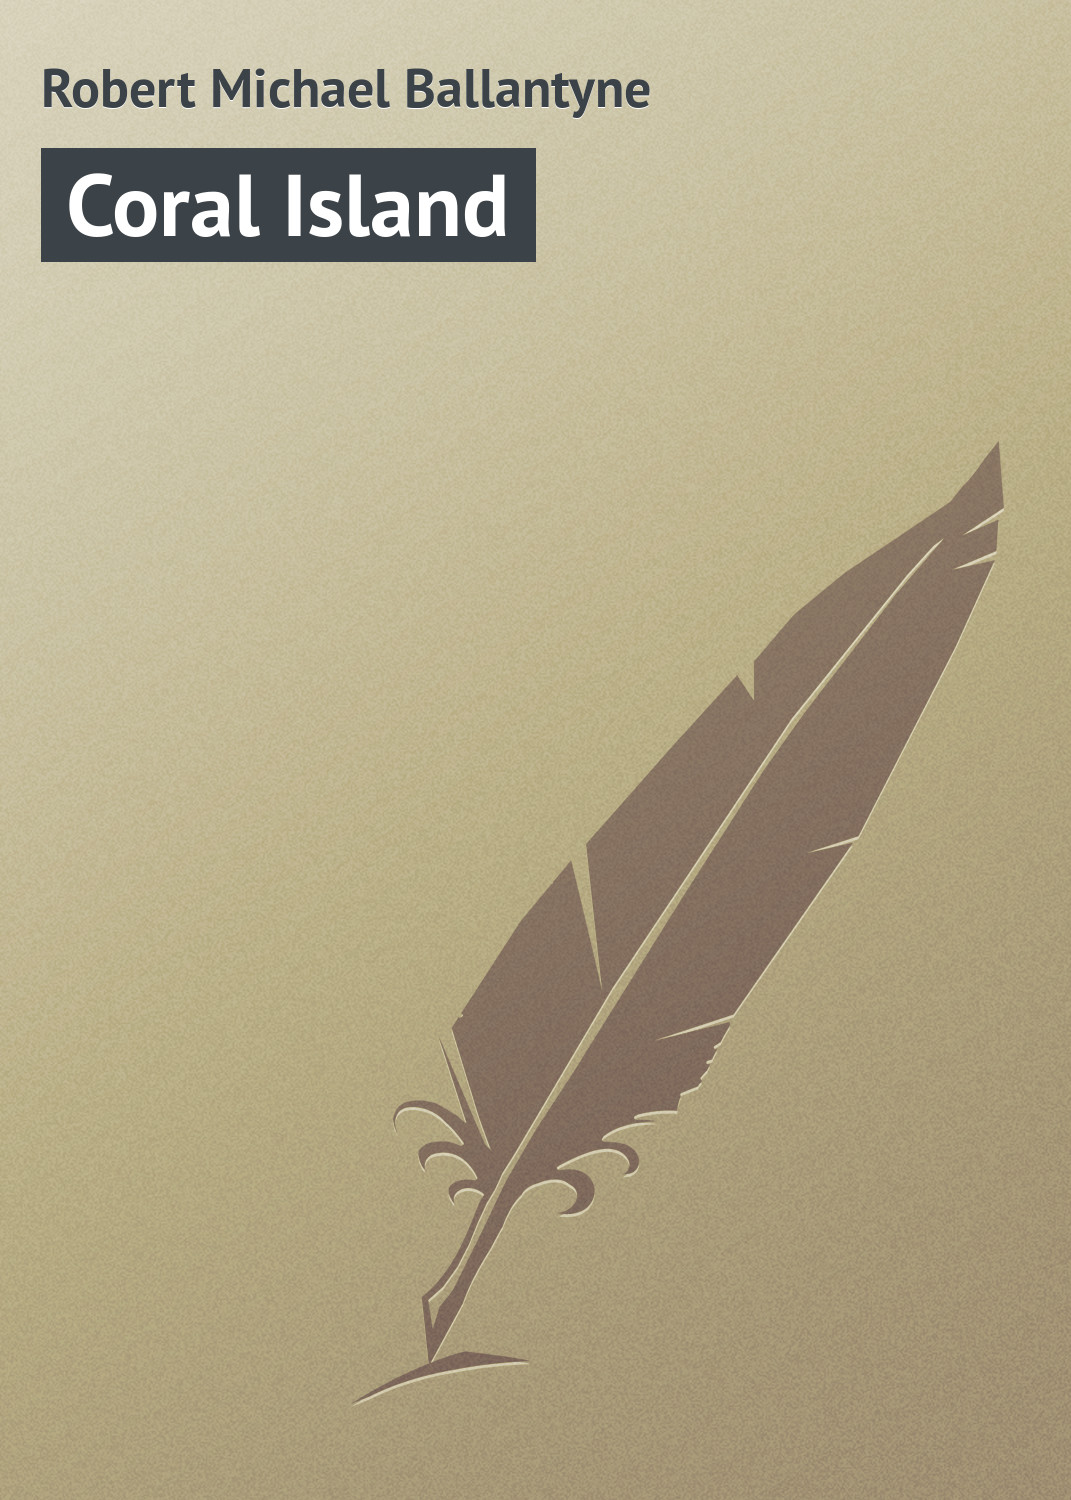 Книга Coral Island из серии , созданная Robert Michael, может относится к жанру Зарубежная старинная литература, Зарубежная классика. Стоимость электронной книги Coral Island с идентификатором 21103558 составляет 5.99 руб.